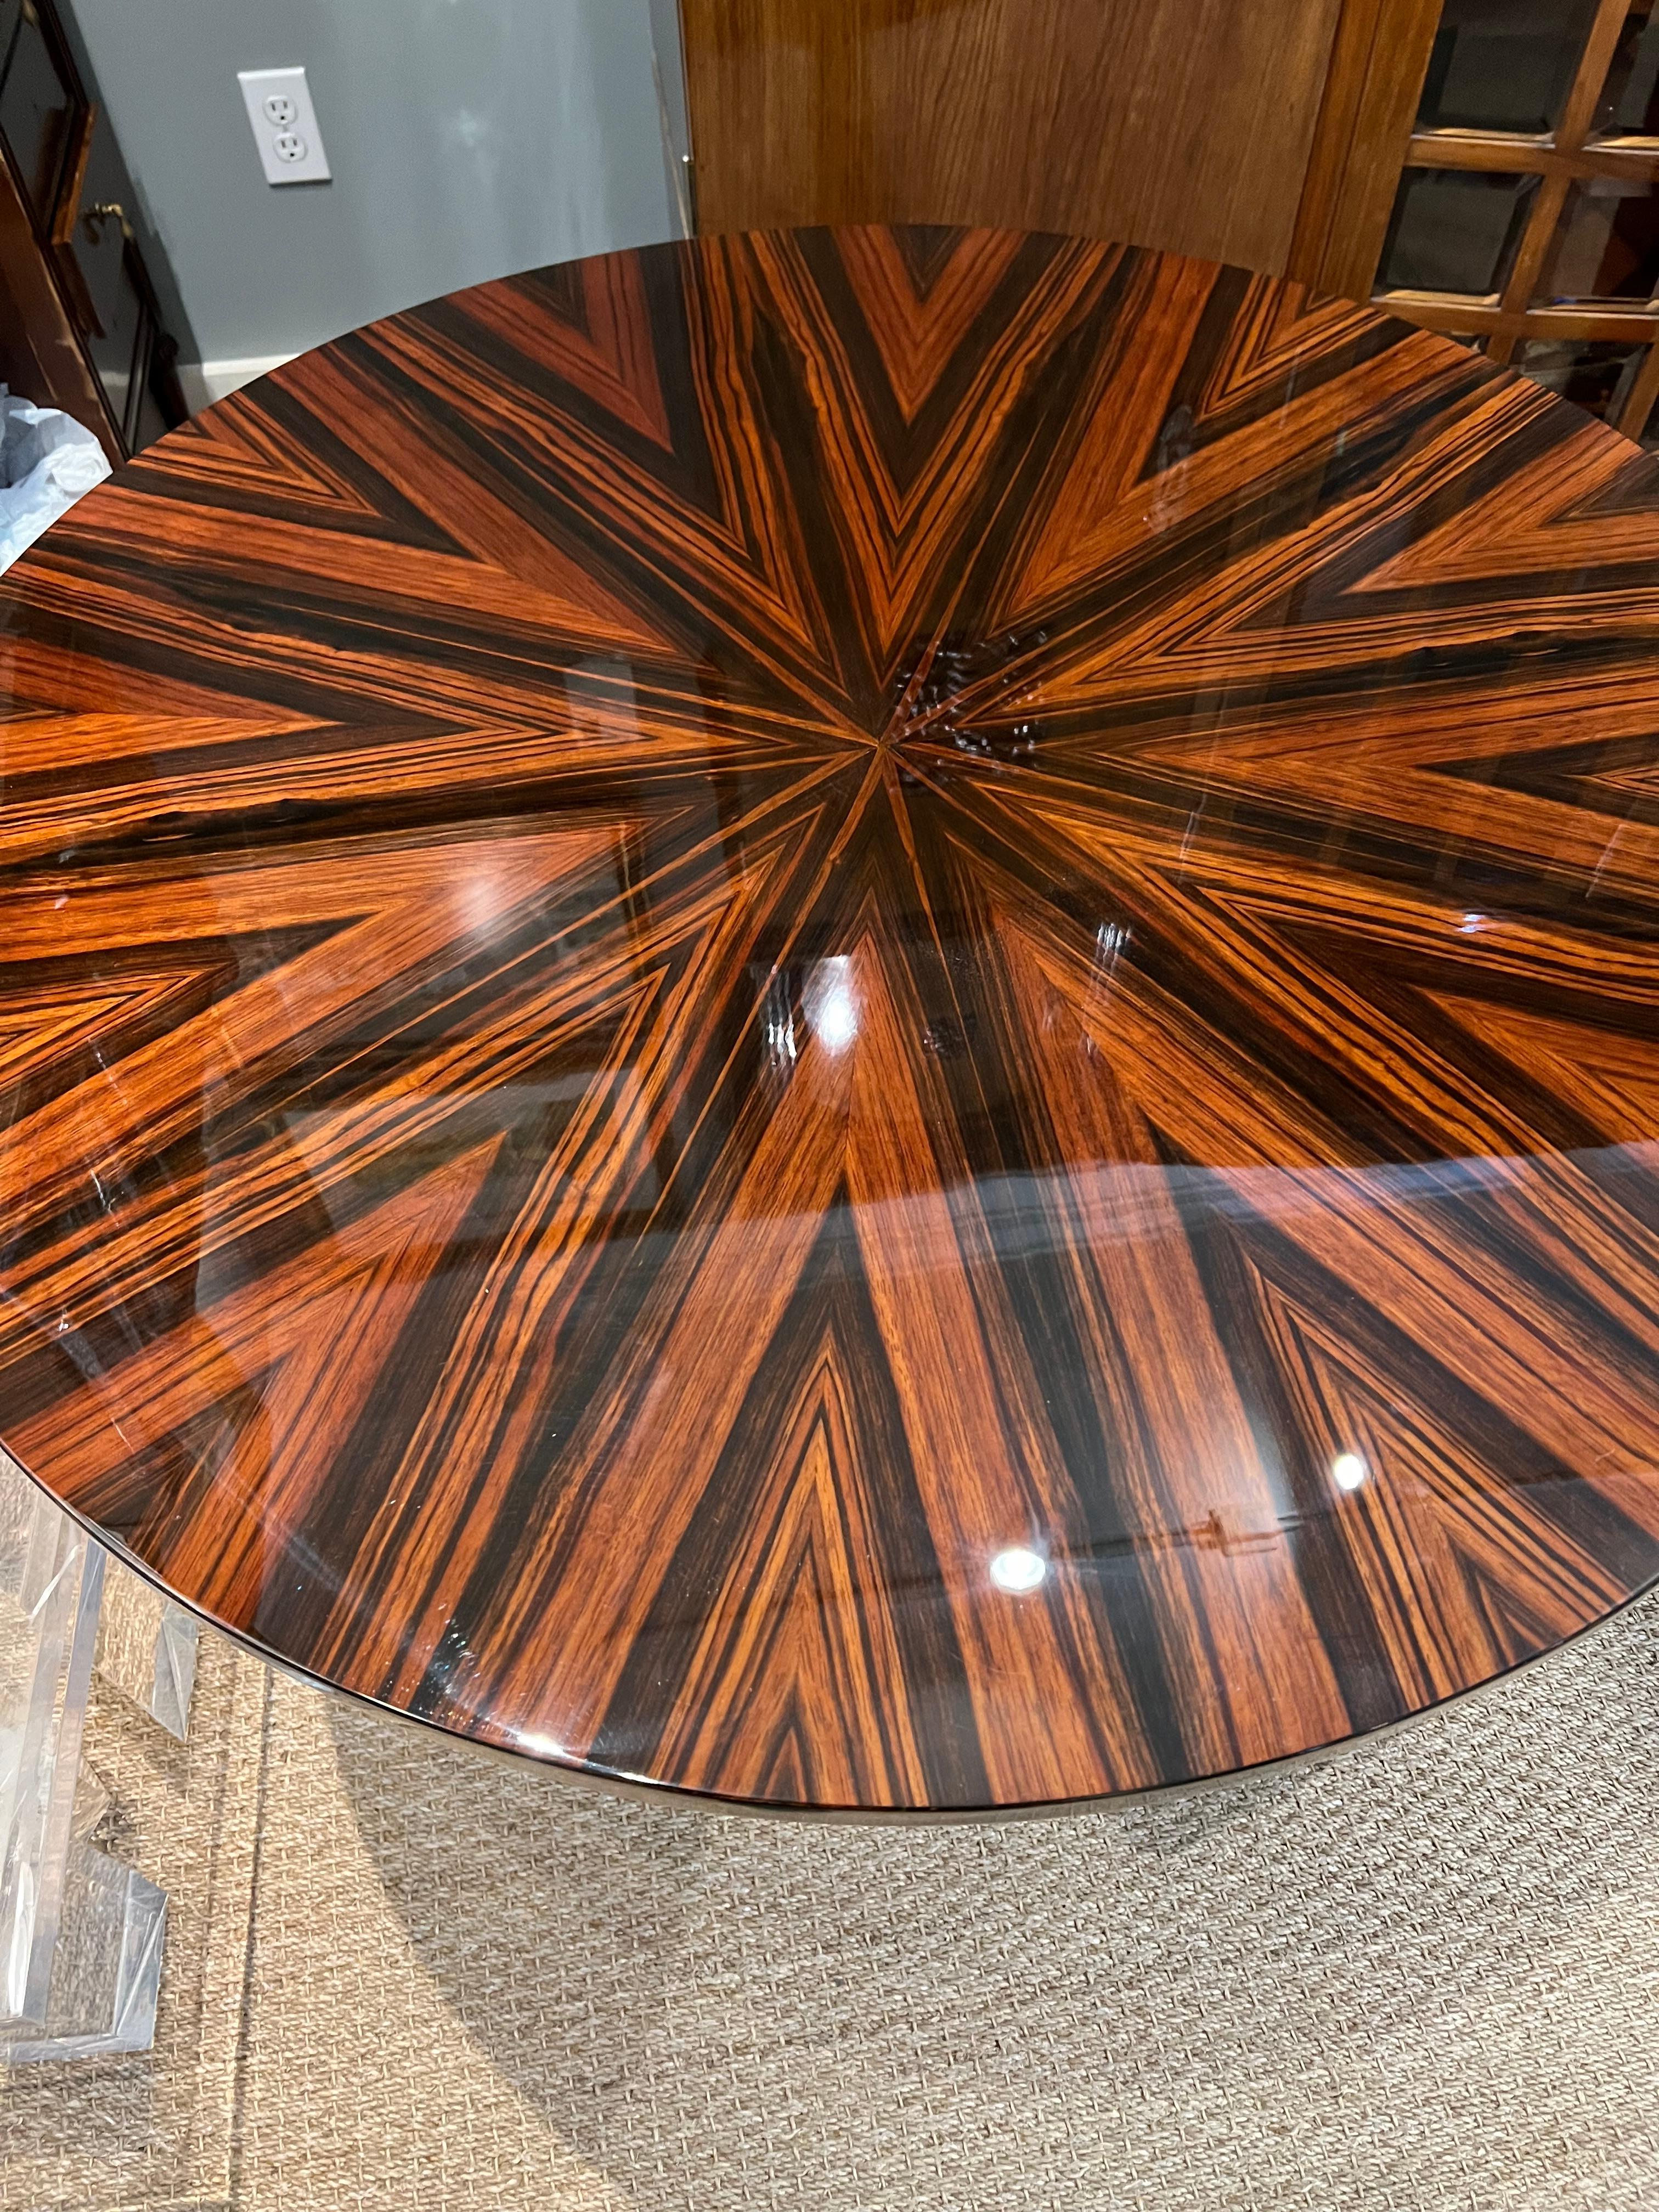 Der Tisch ist aus Makassarholz gefertigt. Die Tischplatte ist an der Unterseite mit einem Messingband verziert. Die Tischplatte ist hochglanzpoliert, um die schöne Holzmaserung zu präsentieren. Er ruht auf 3 Beinen, die am Boden miteinander